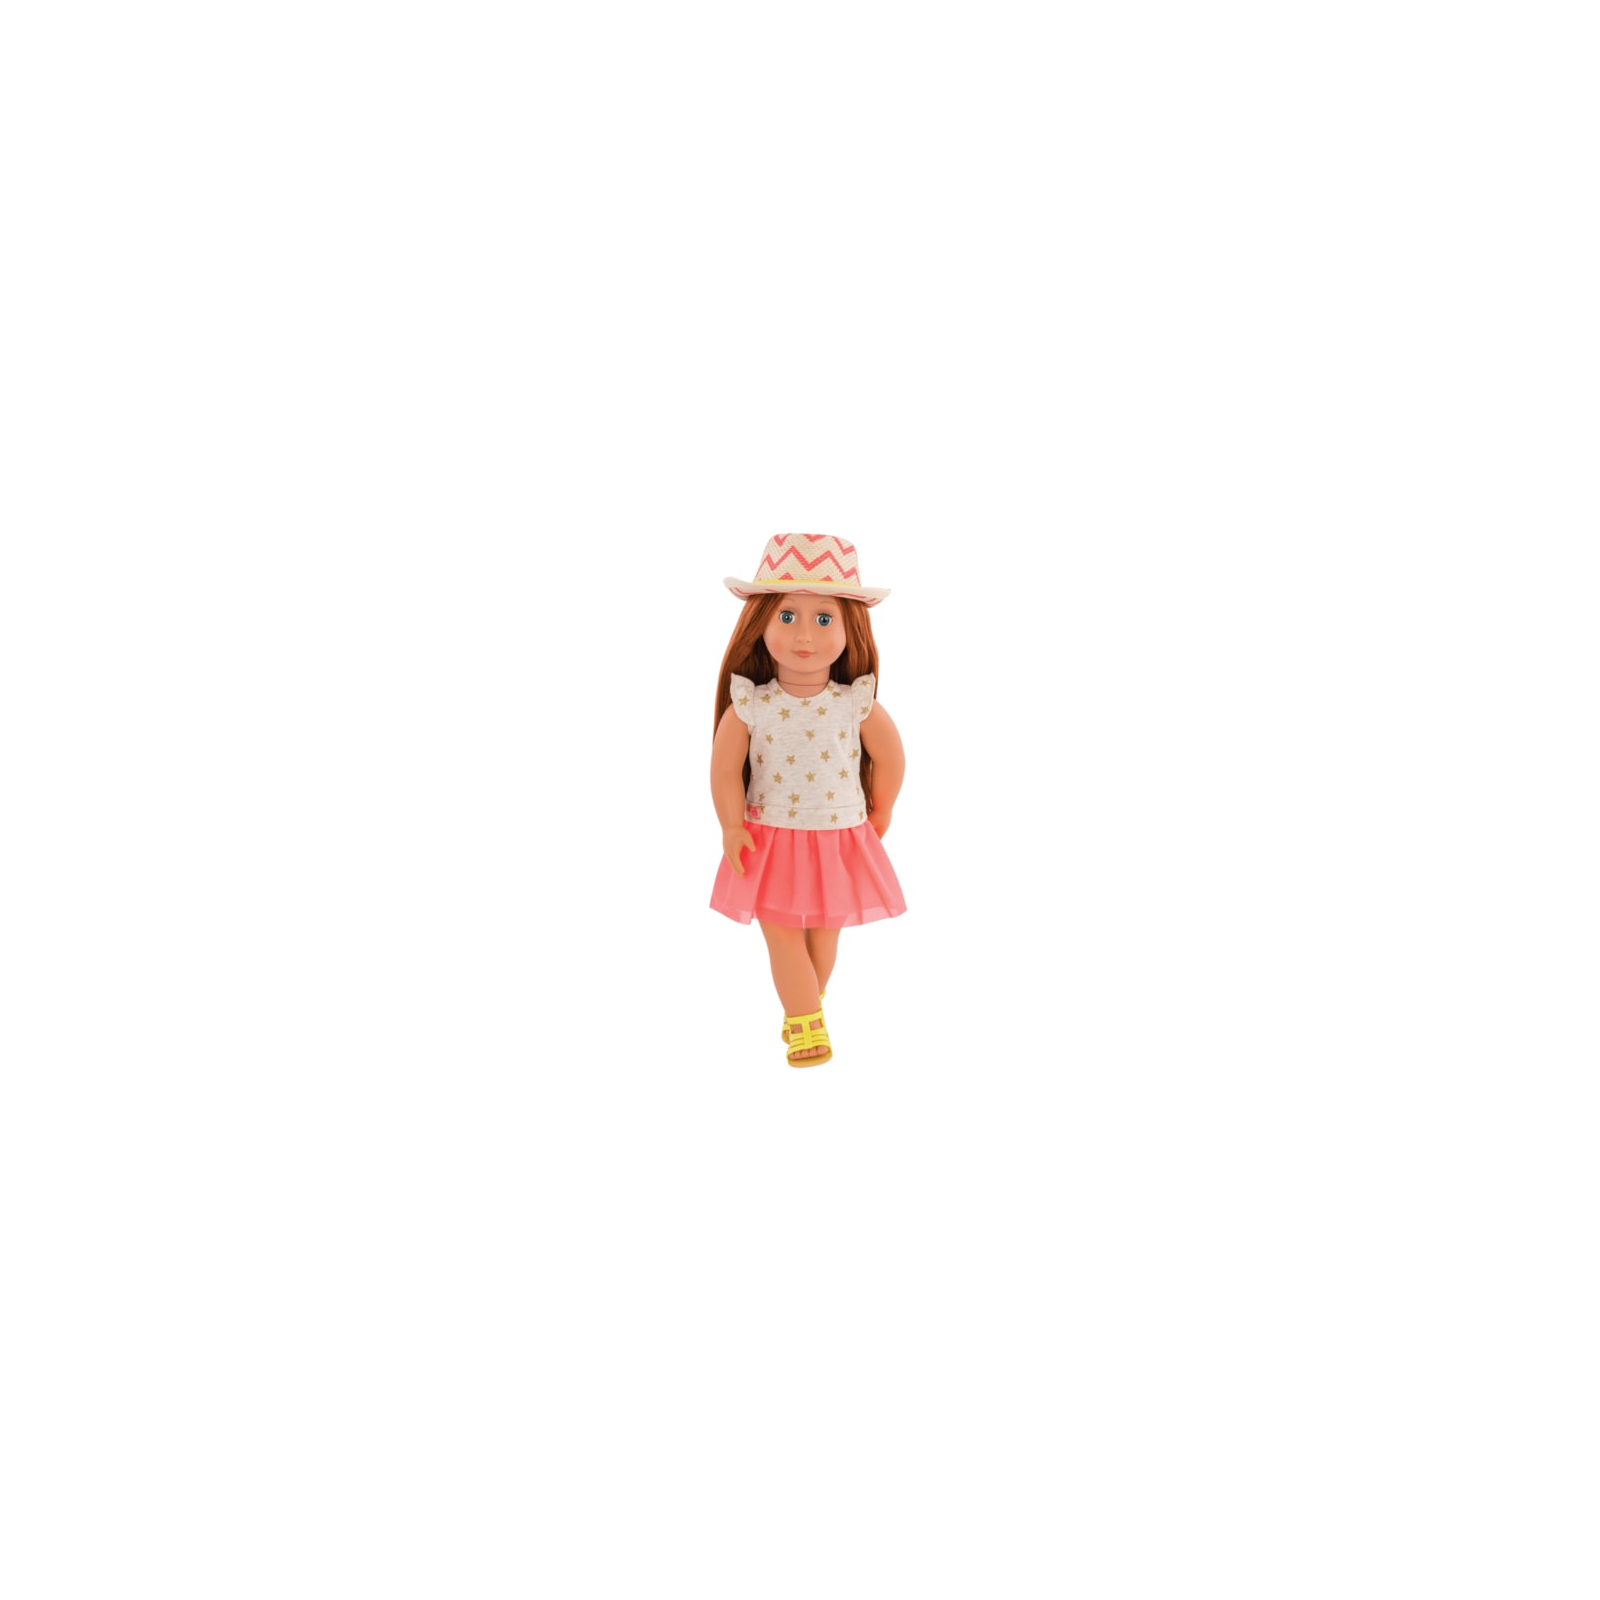 Лялька Our Generation Клементин 46 см в платье со шляпкой (BD31138Z)